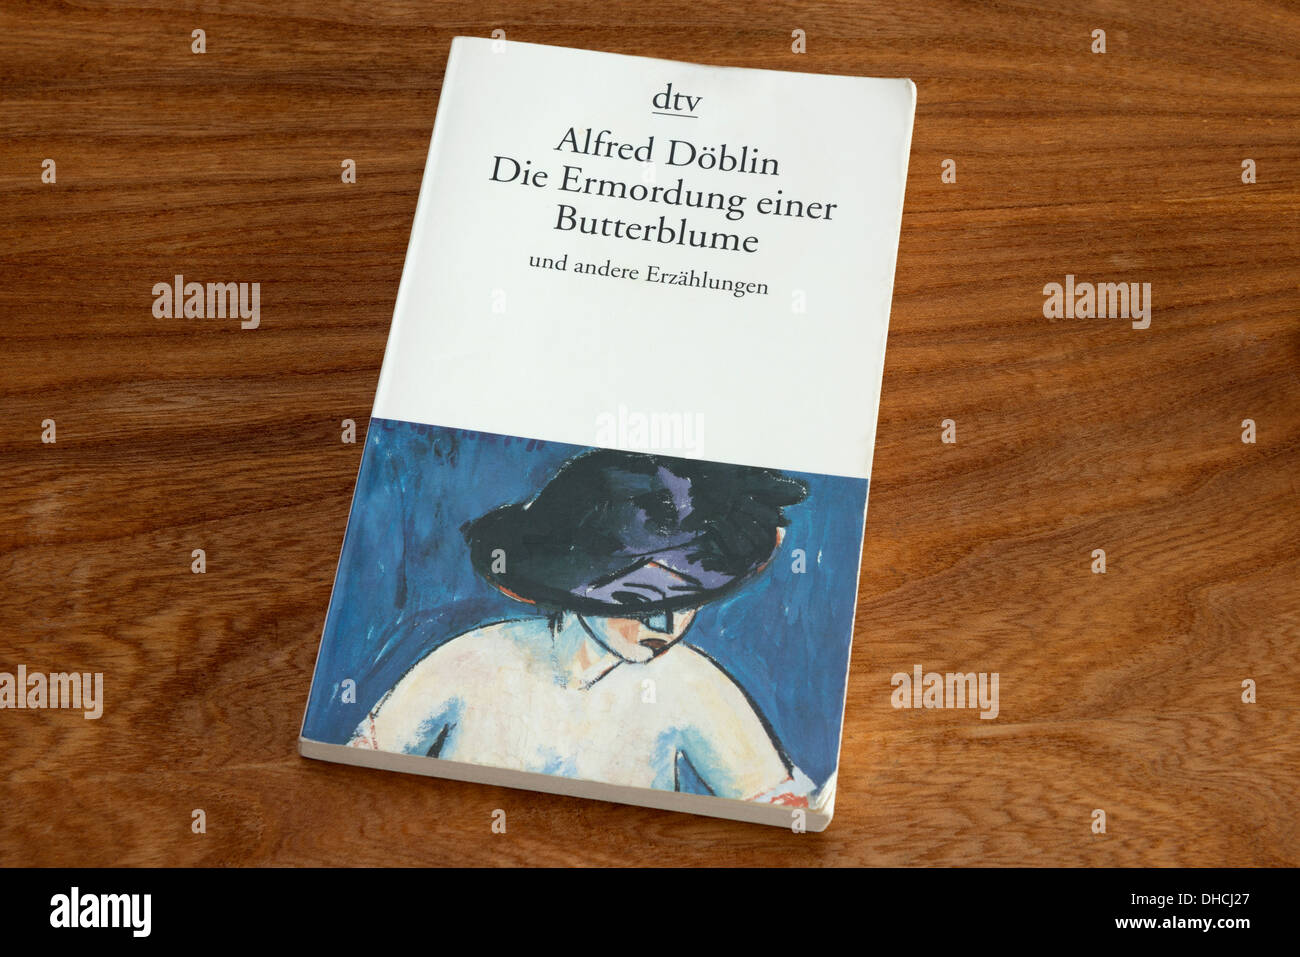 Alfred Doblin Die Ermordung einer Butterblume novel Stock Photo